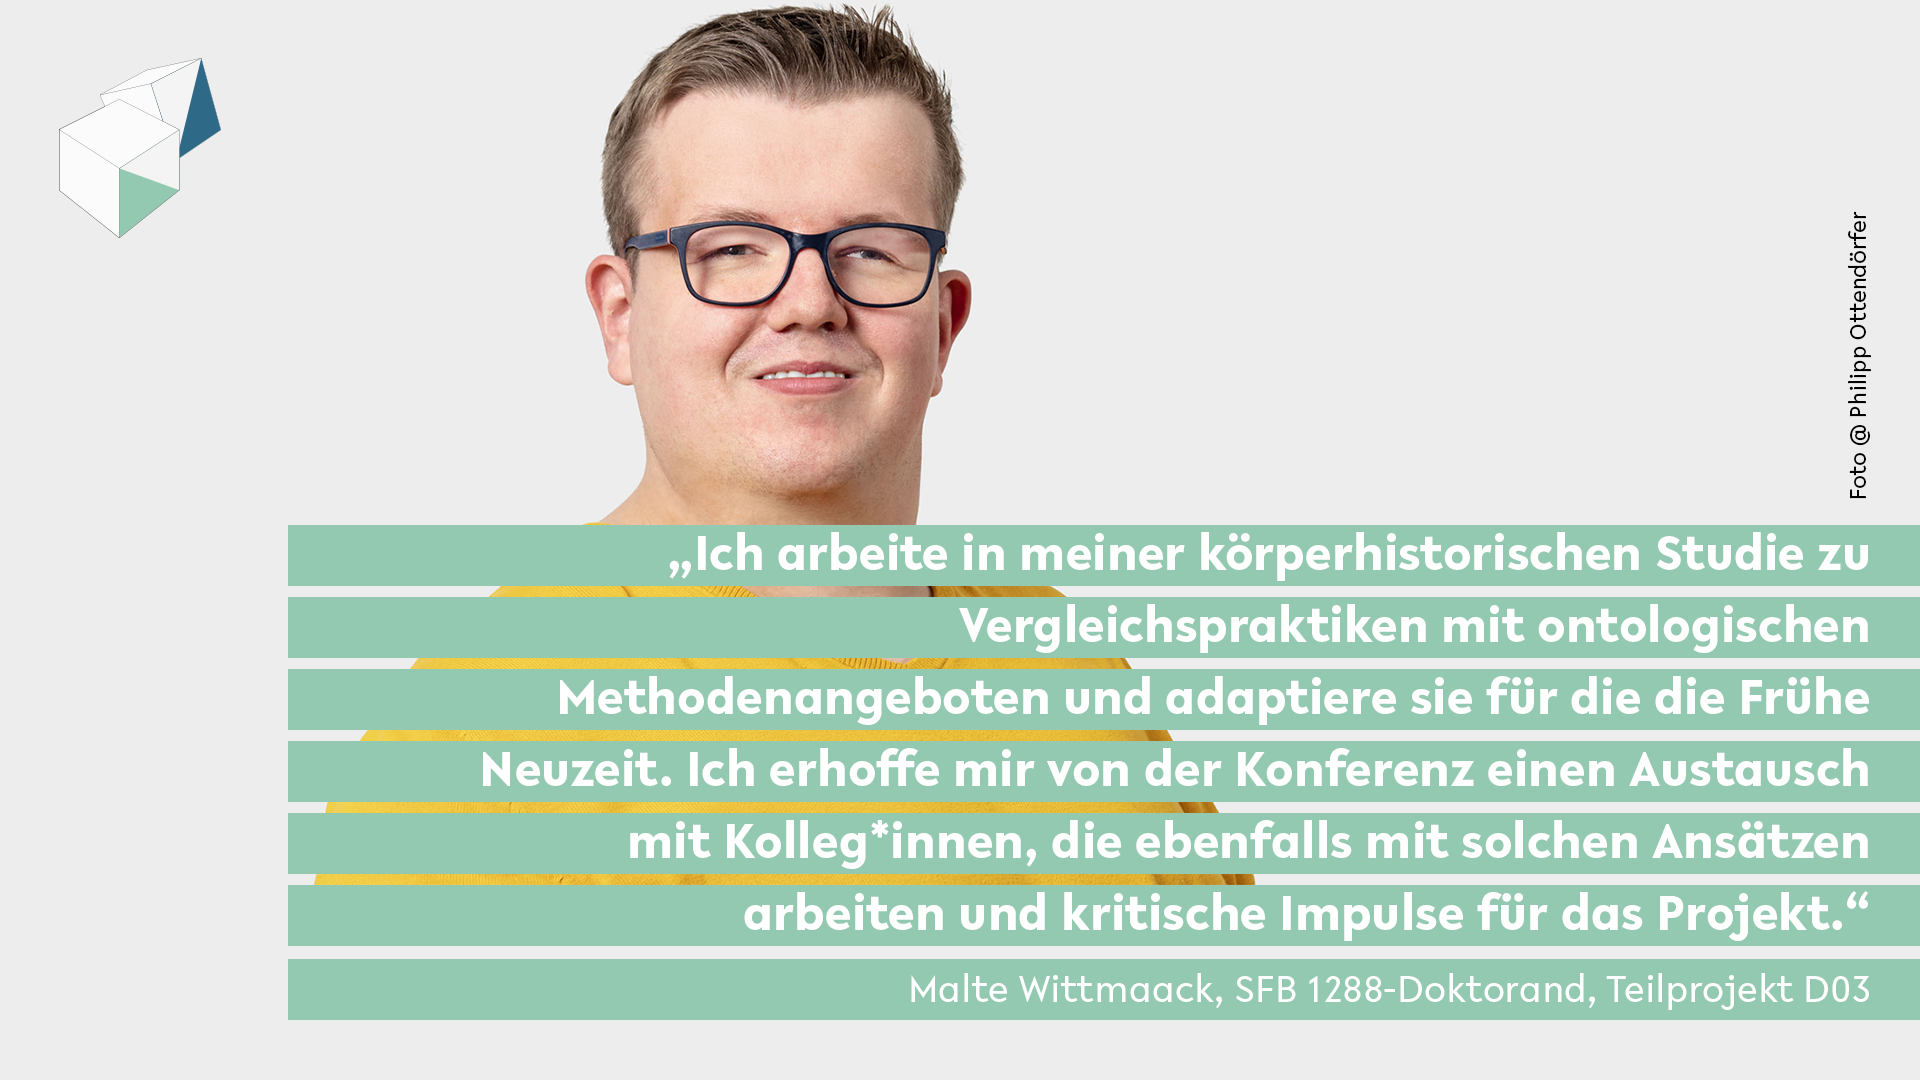 Malte Wittmaack Zitat